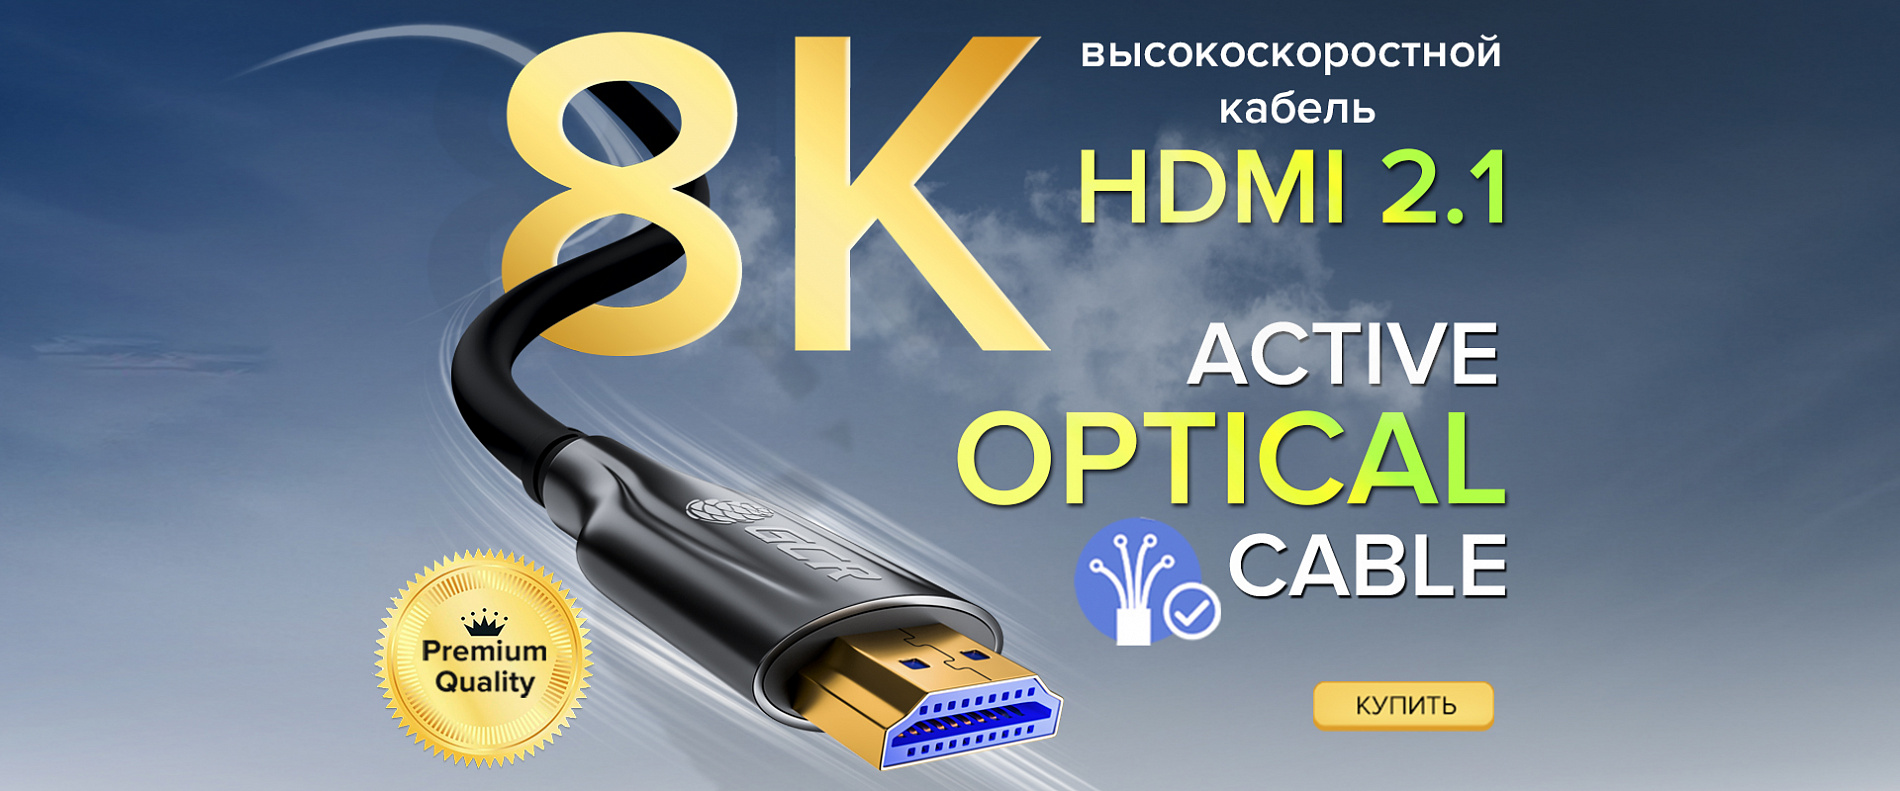 Оптический кабель HDMI 2.1